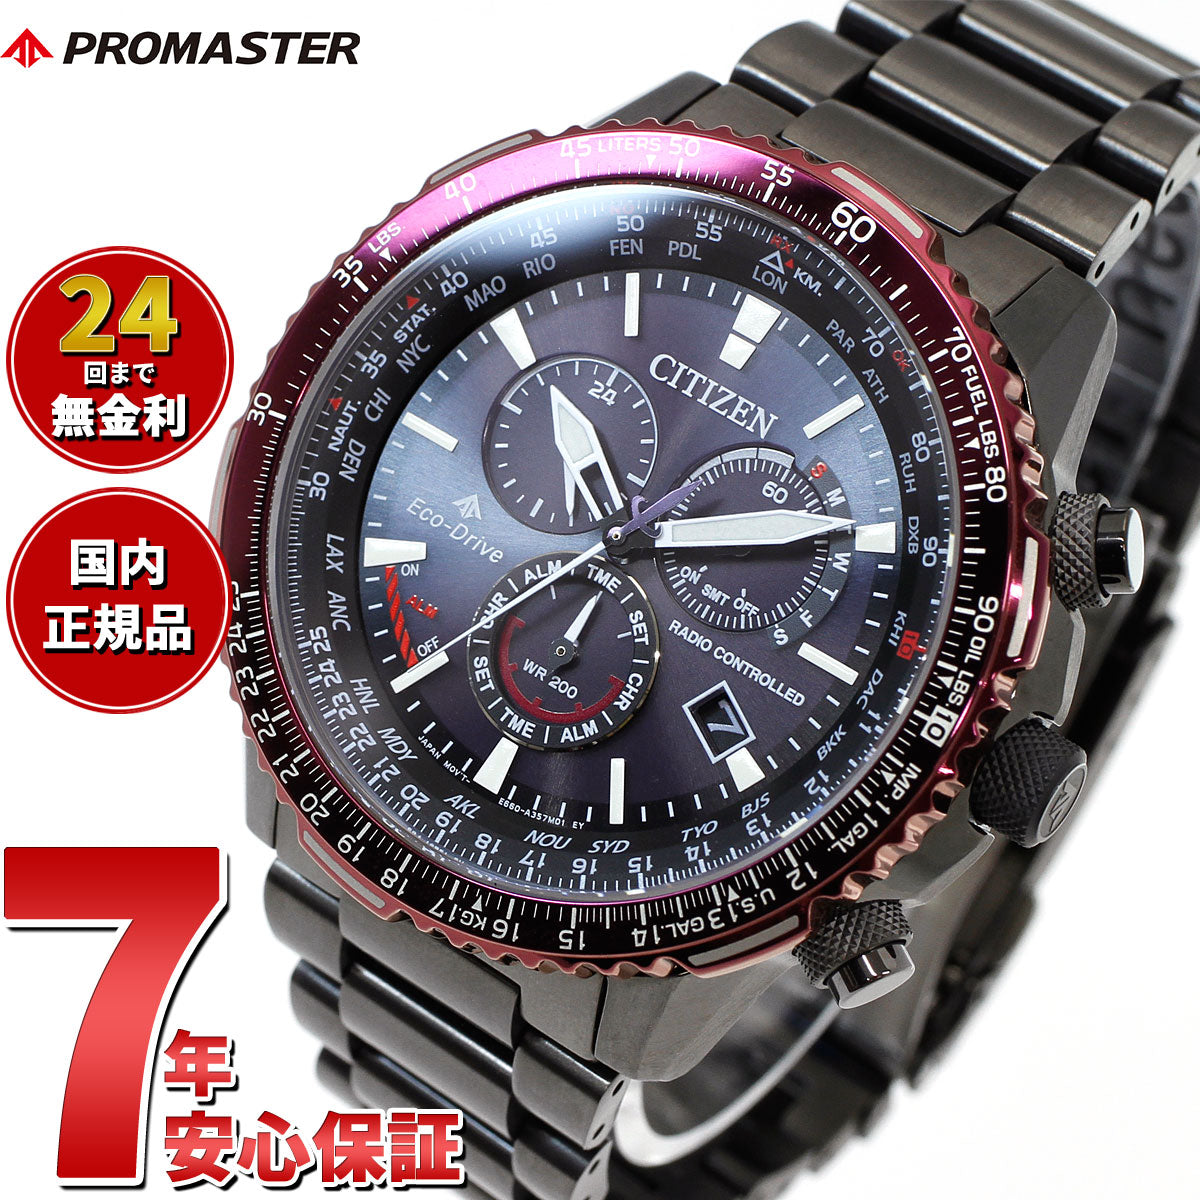 CITIZEN エコドライブ メンズ腕時計 プロマスター BY0120-54E - 腕時計 